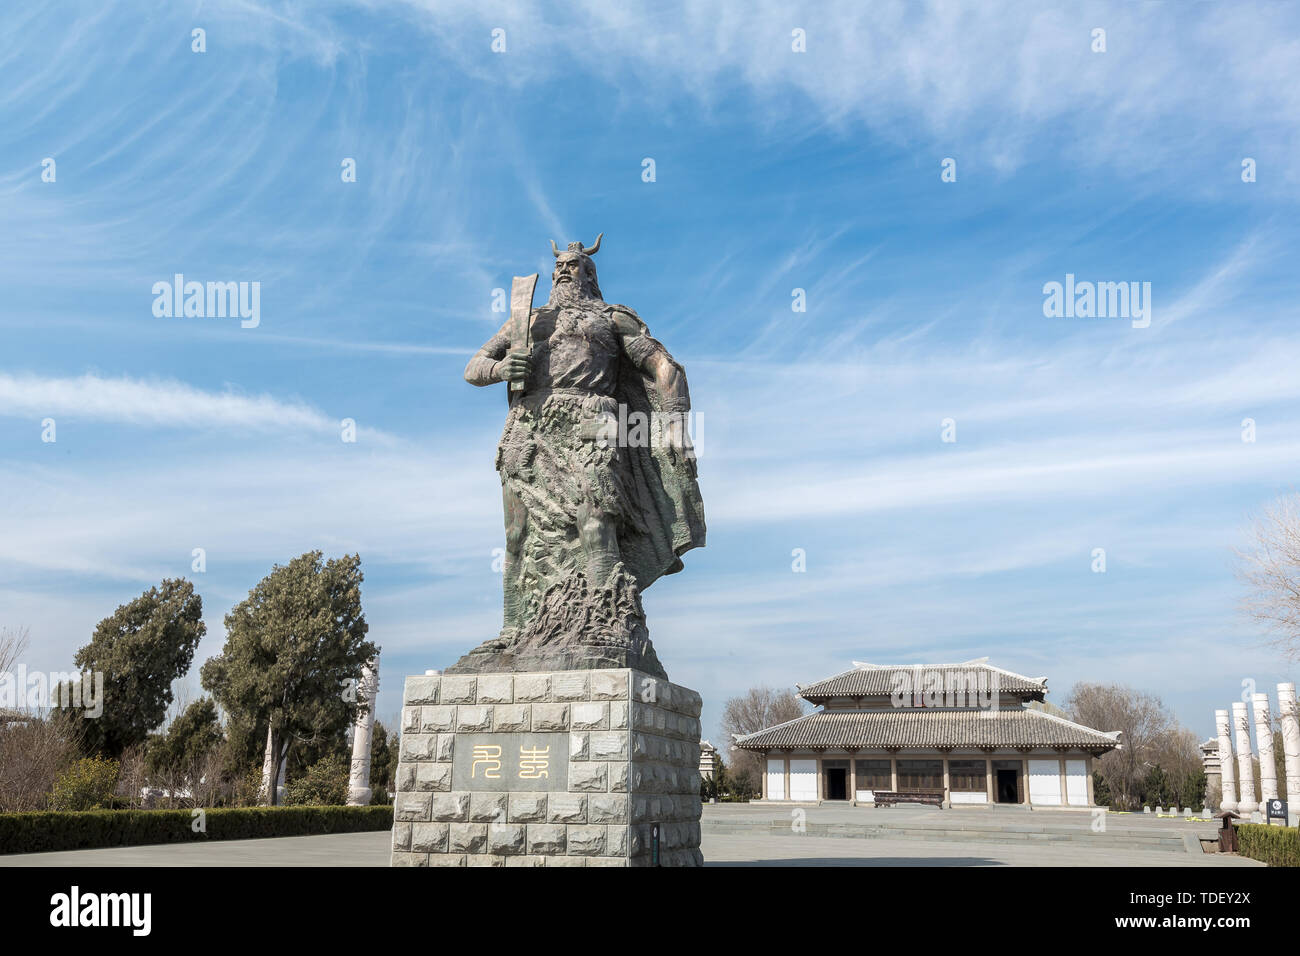 The statue of Chiyou in Chiyou Ling, 15li Yuan Town, Yanggu County, Shandong Province Stock Photo